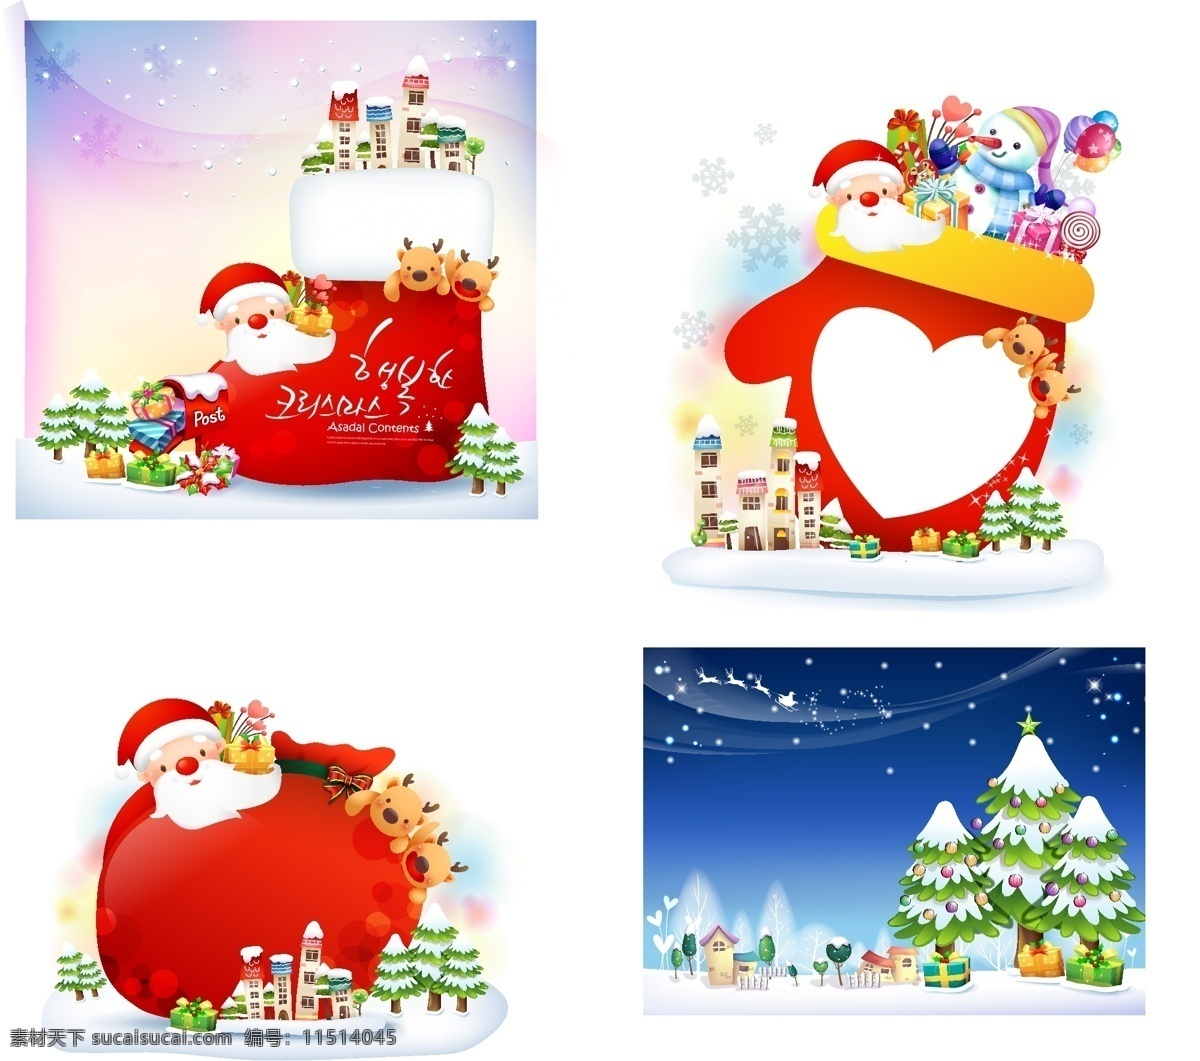 圣诞老人 雪人 矢量图 房屋 卡通圣诞 礼盒 礼物袋 麋鹿 圣诞吊饰 圣诞树 雪花 节日素材 其他节日